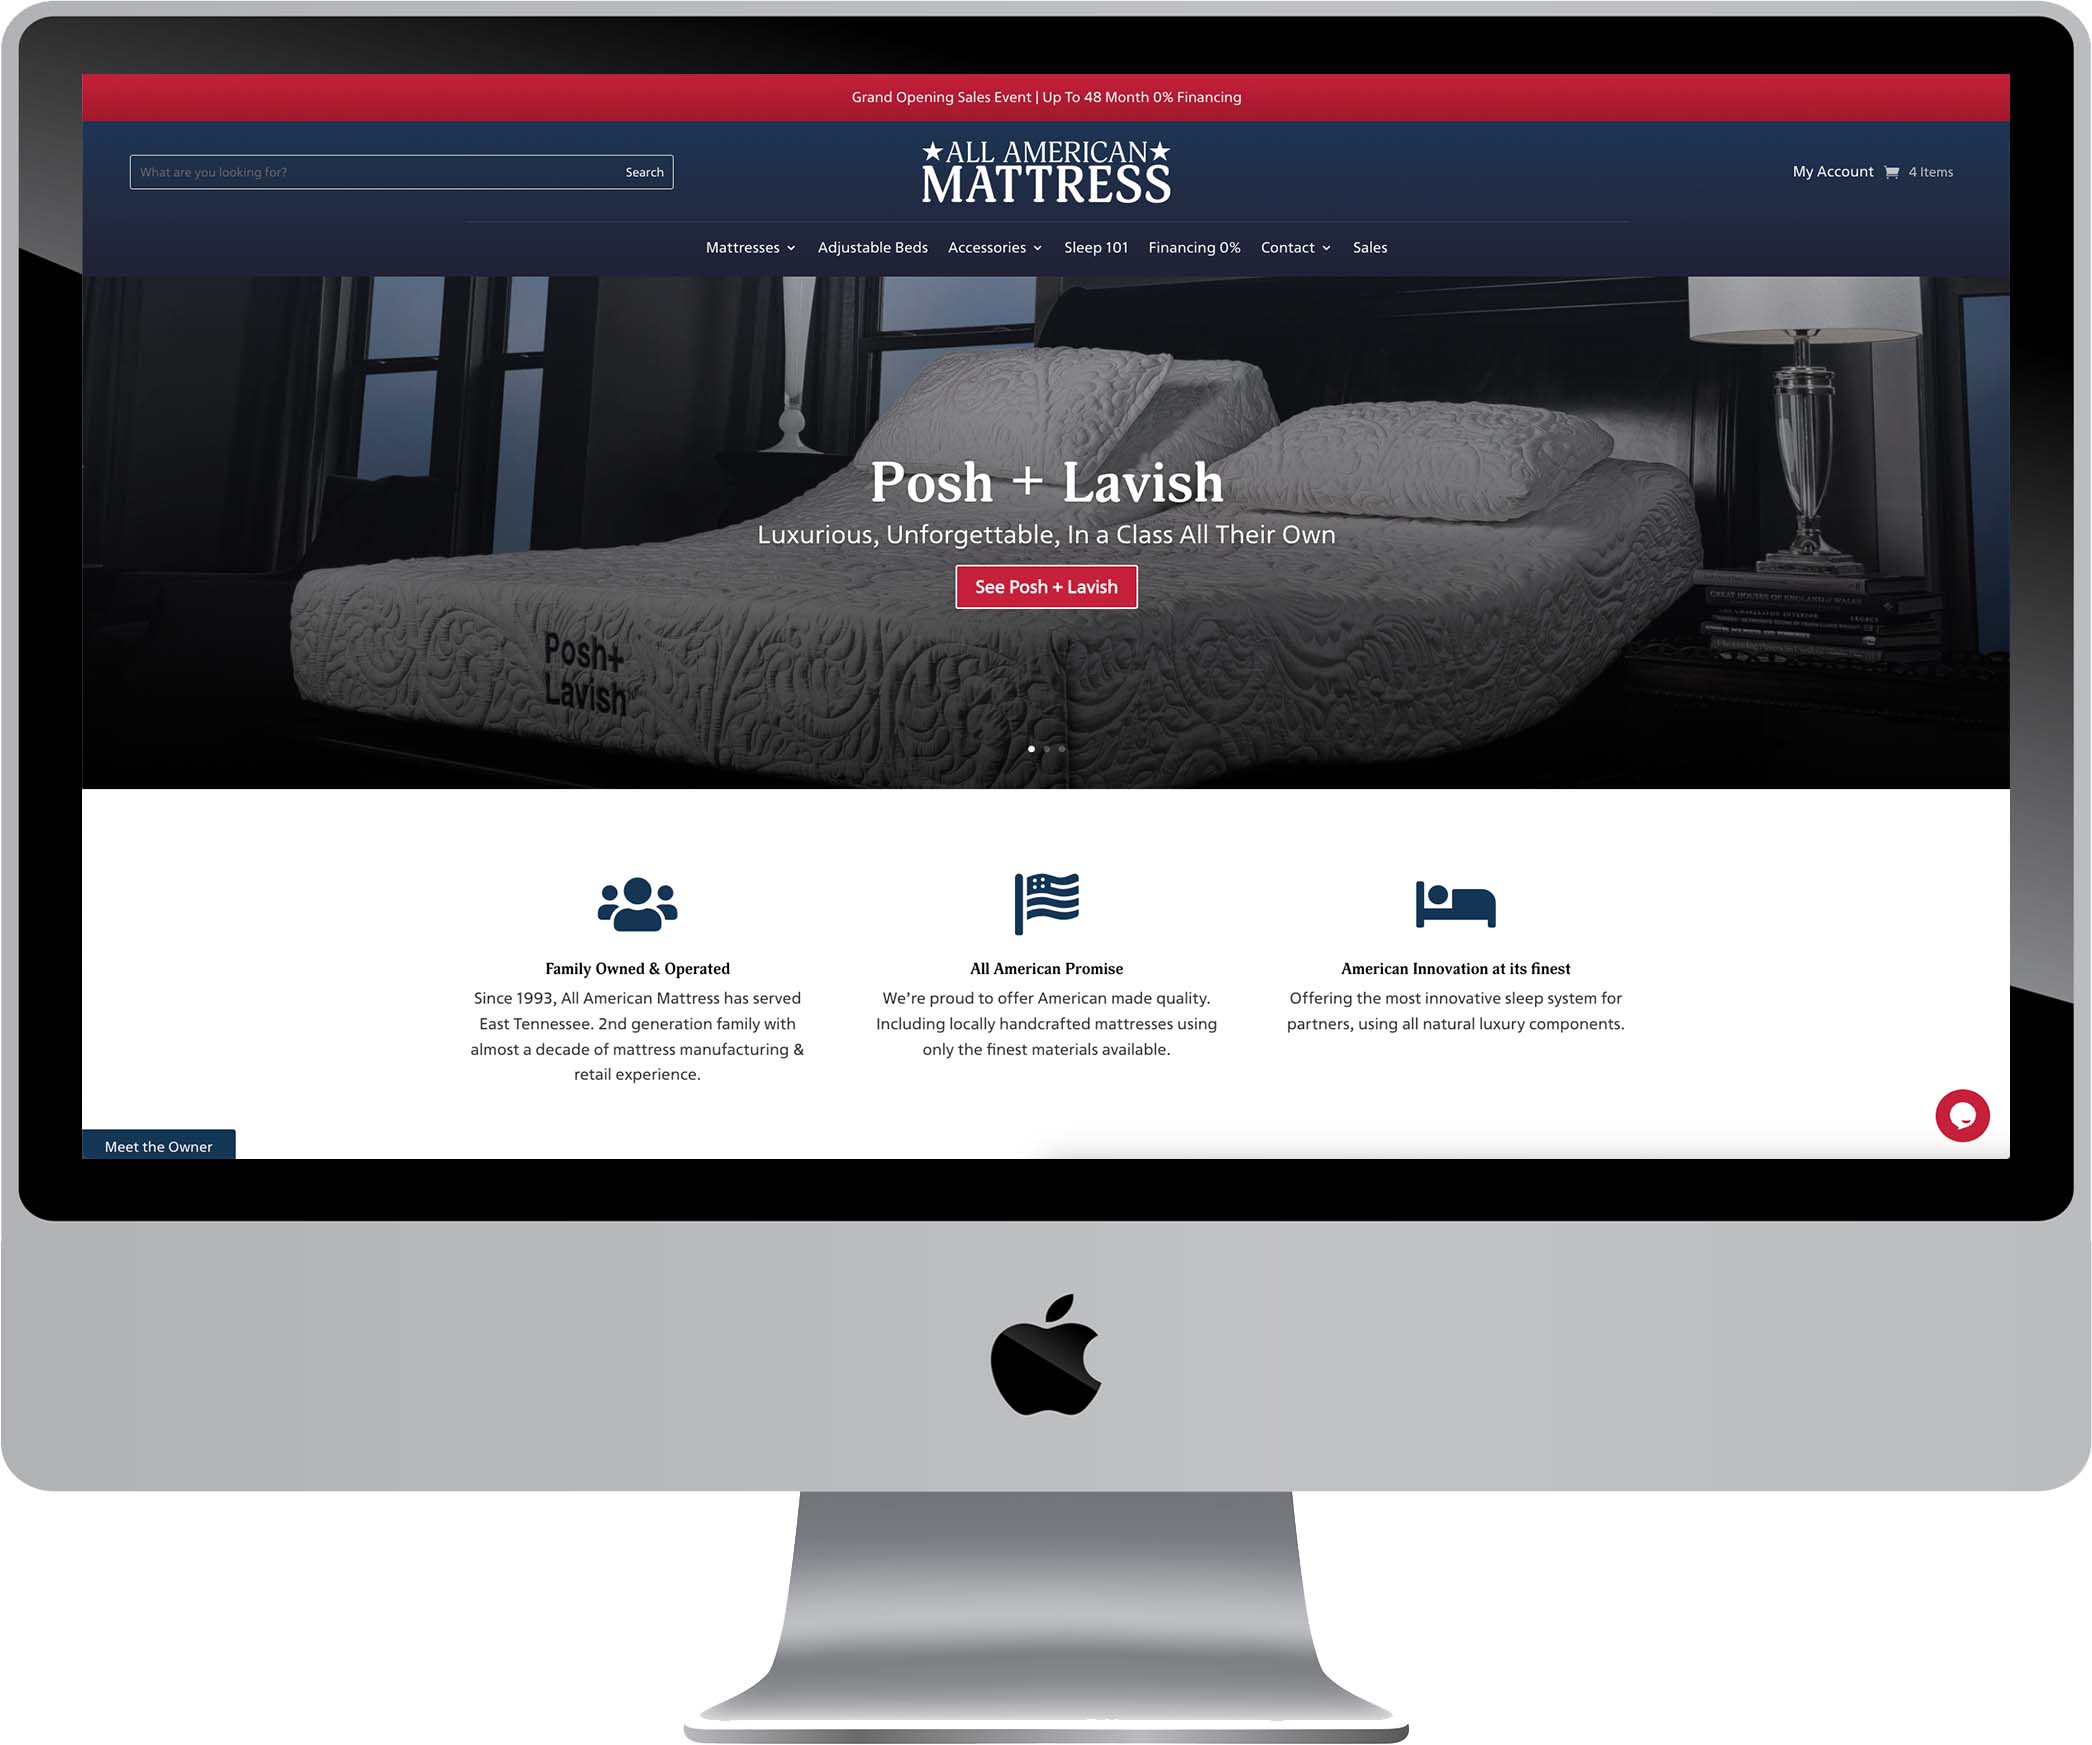 All American Mattress Website Design